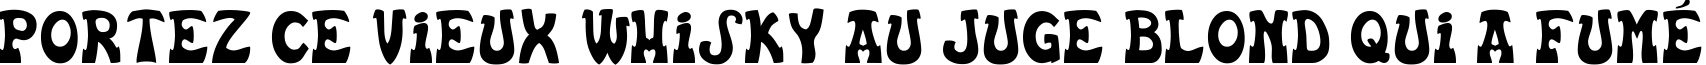 Пример написания шрифтом Basc текста на французском